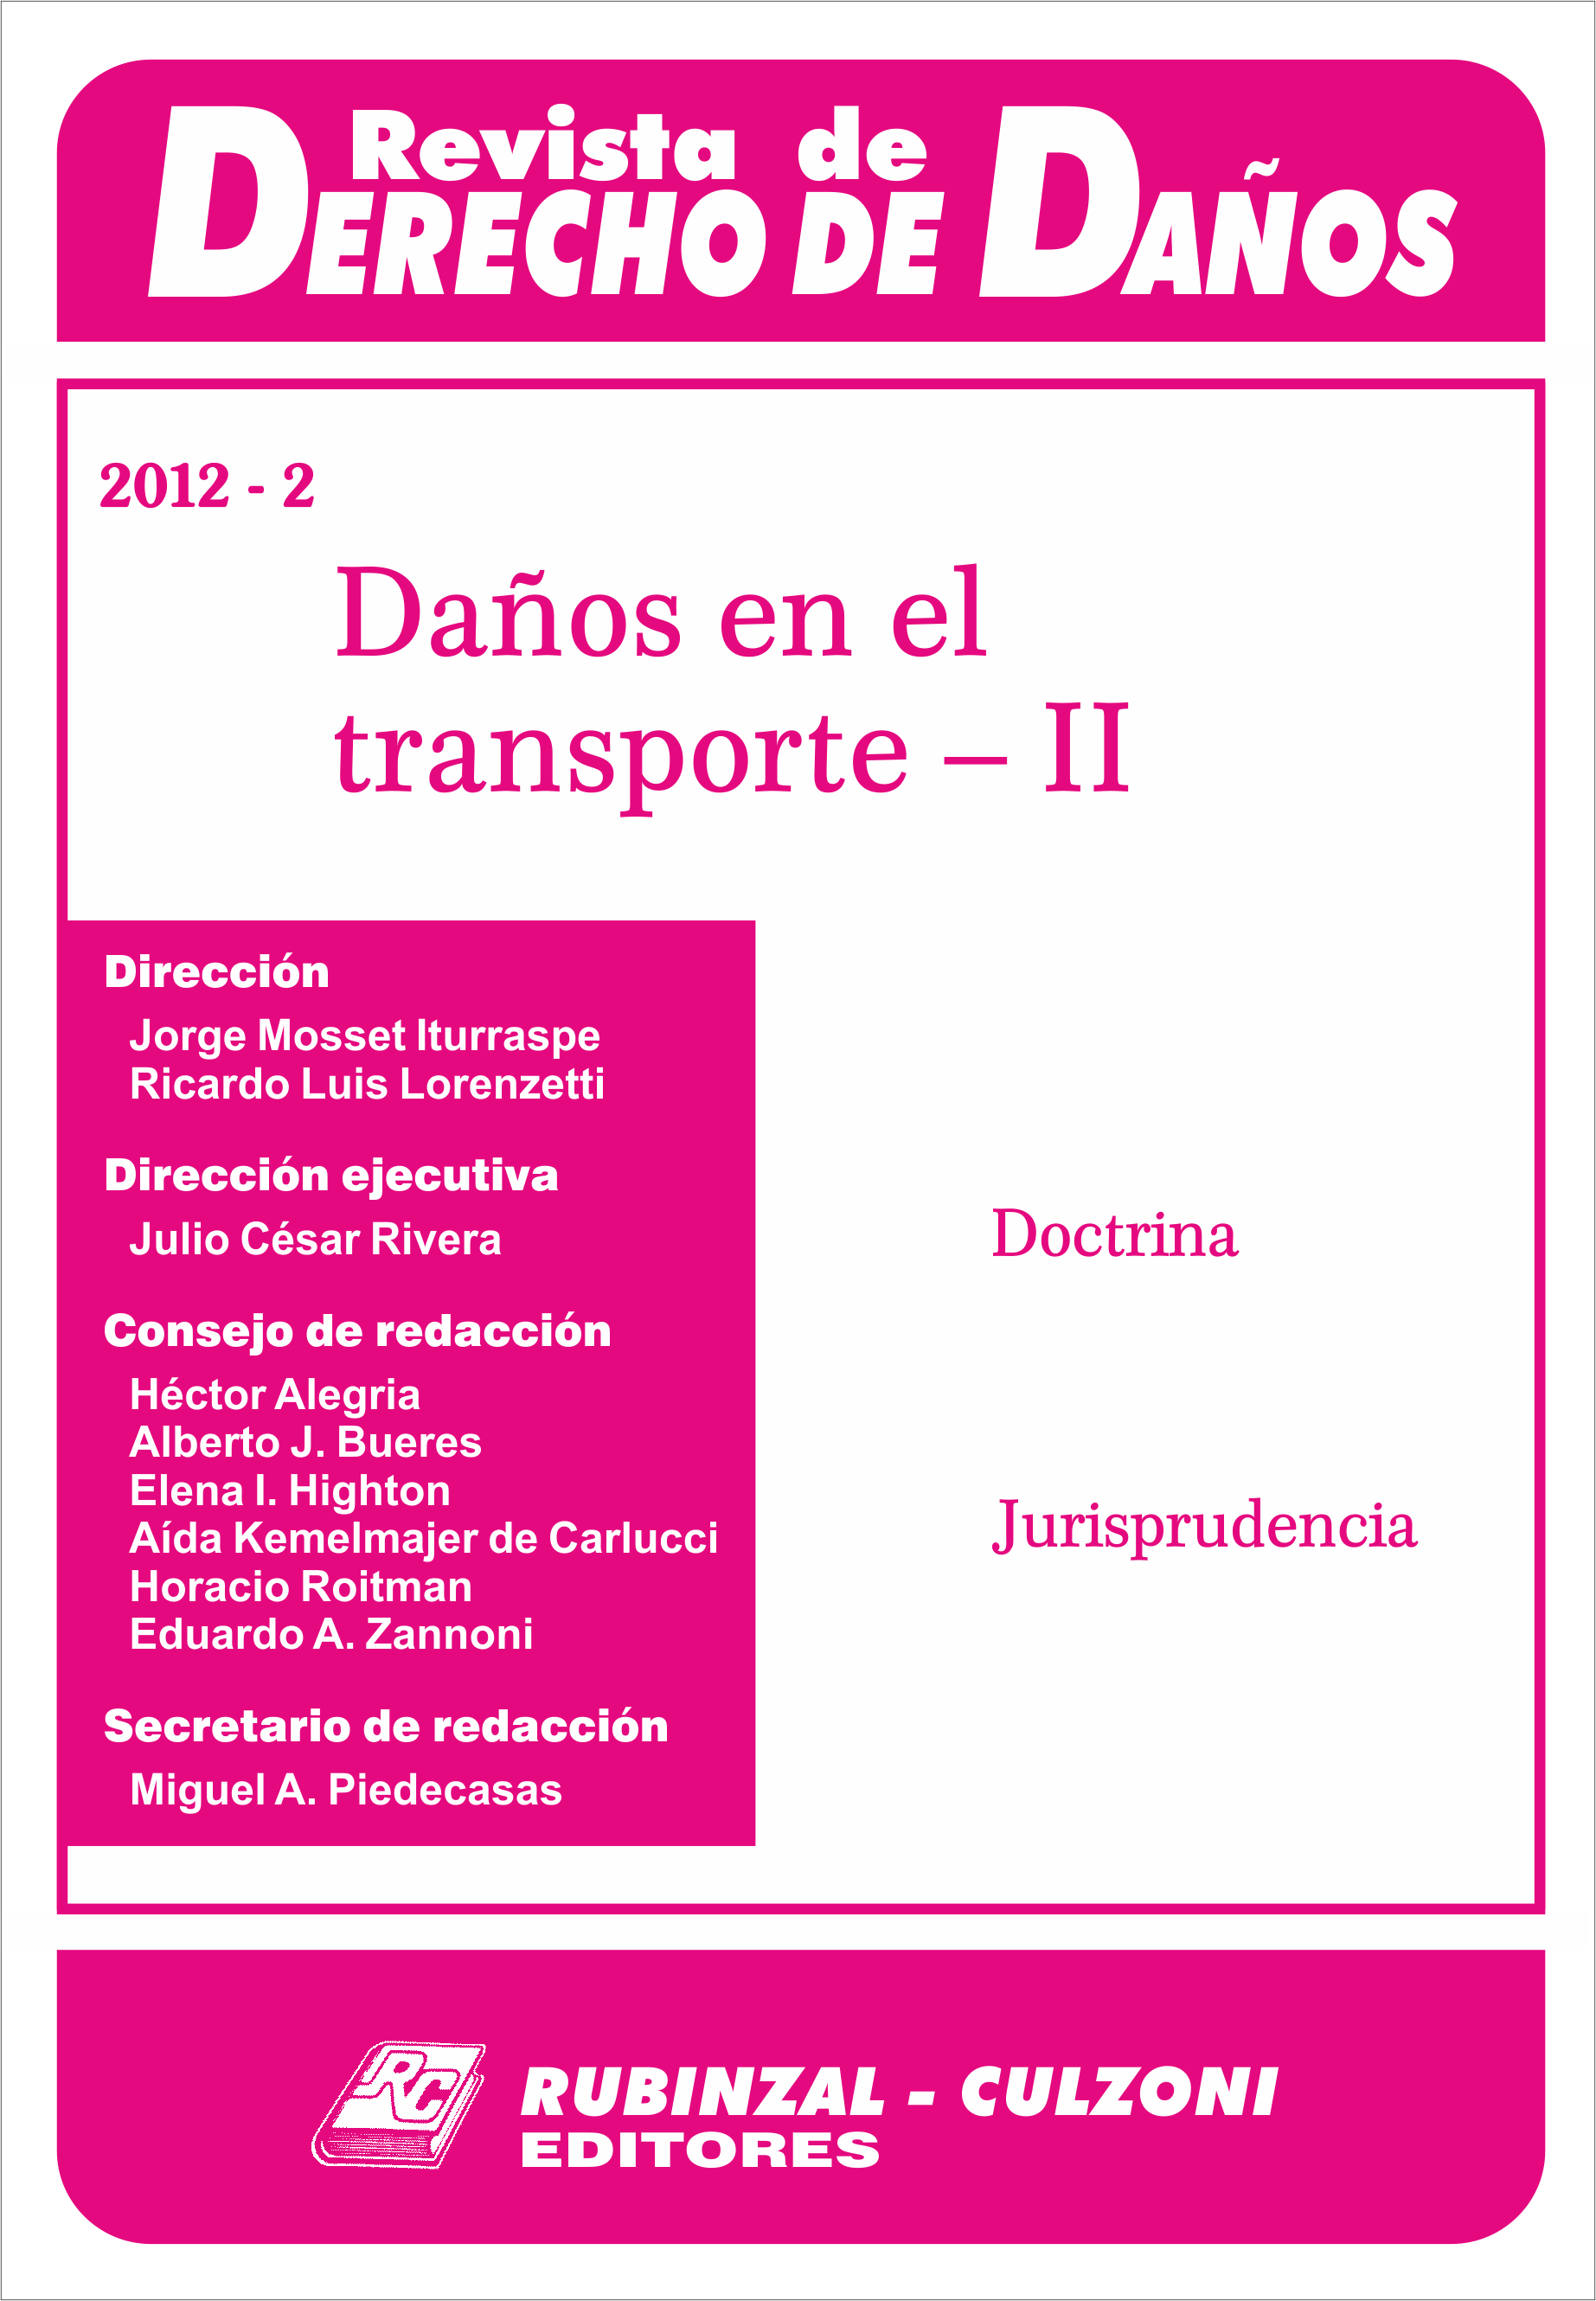 Revista de Derecho de Daños - Daños en el transporte - II